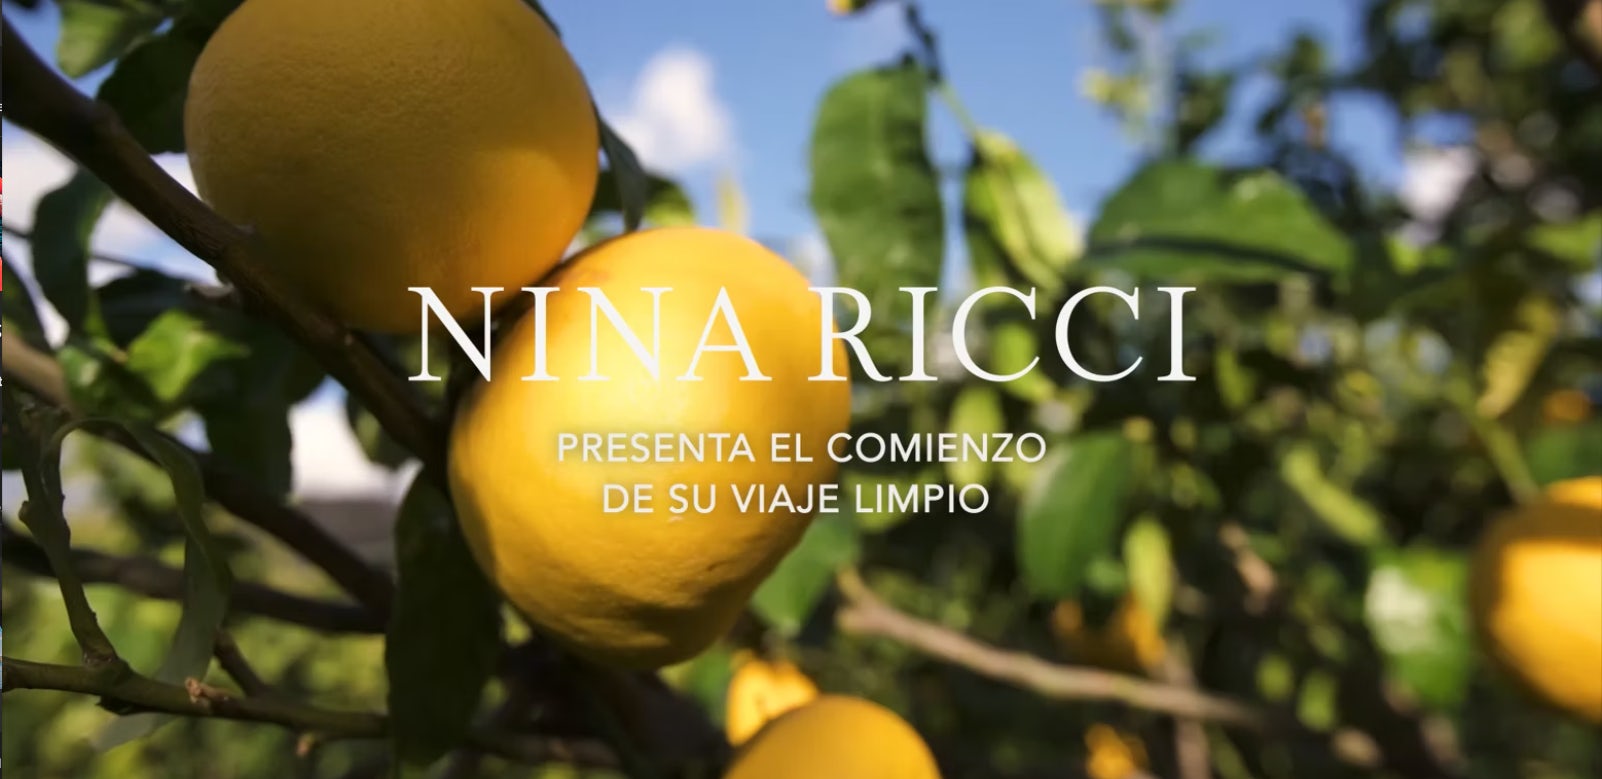 Nuestros compromisos - Nina Ricci